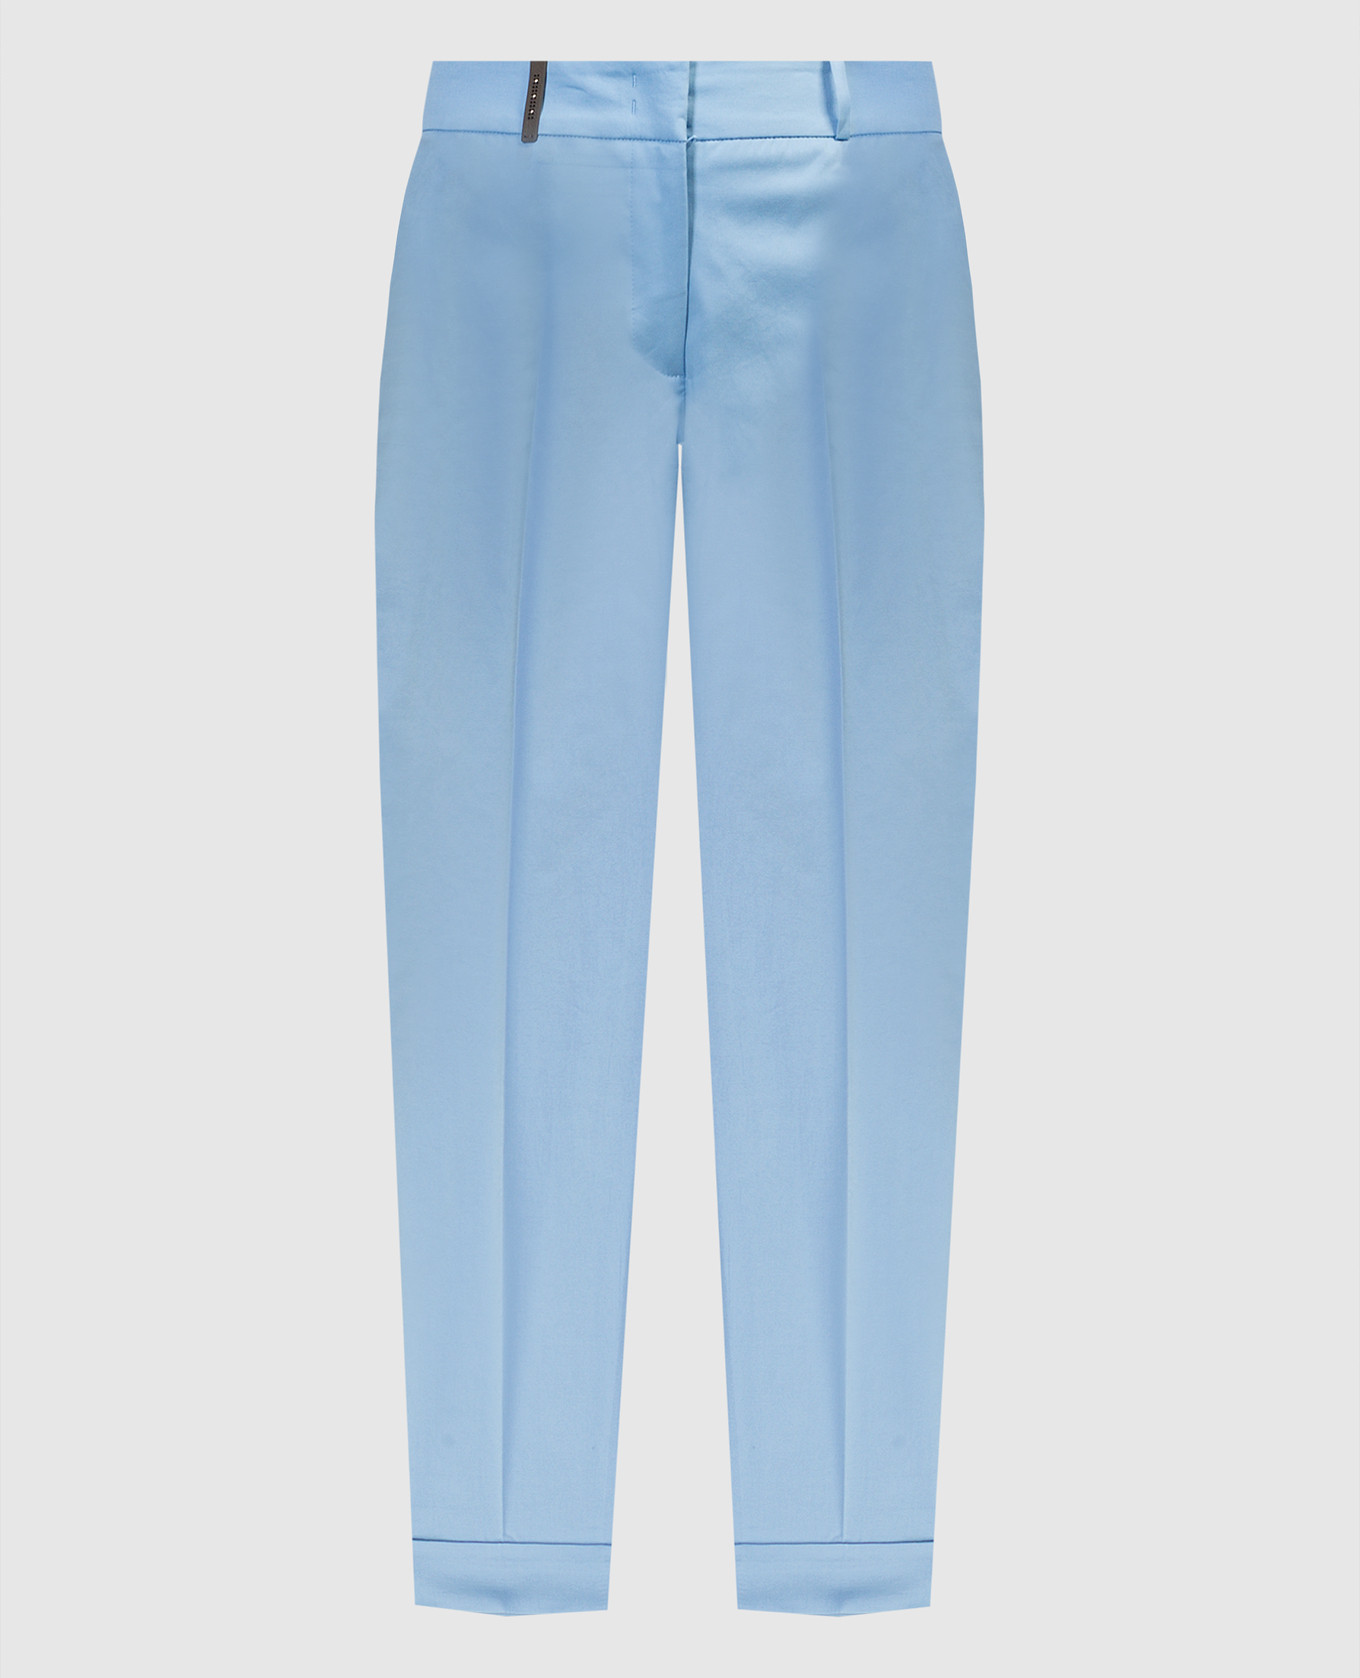 Blue pants